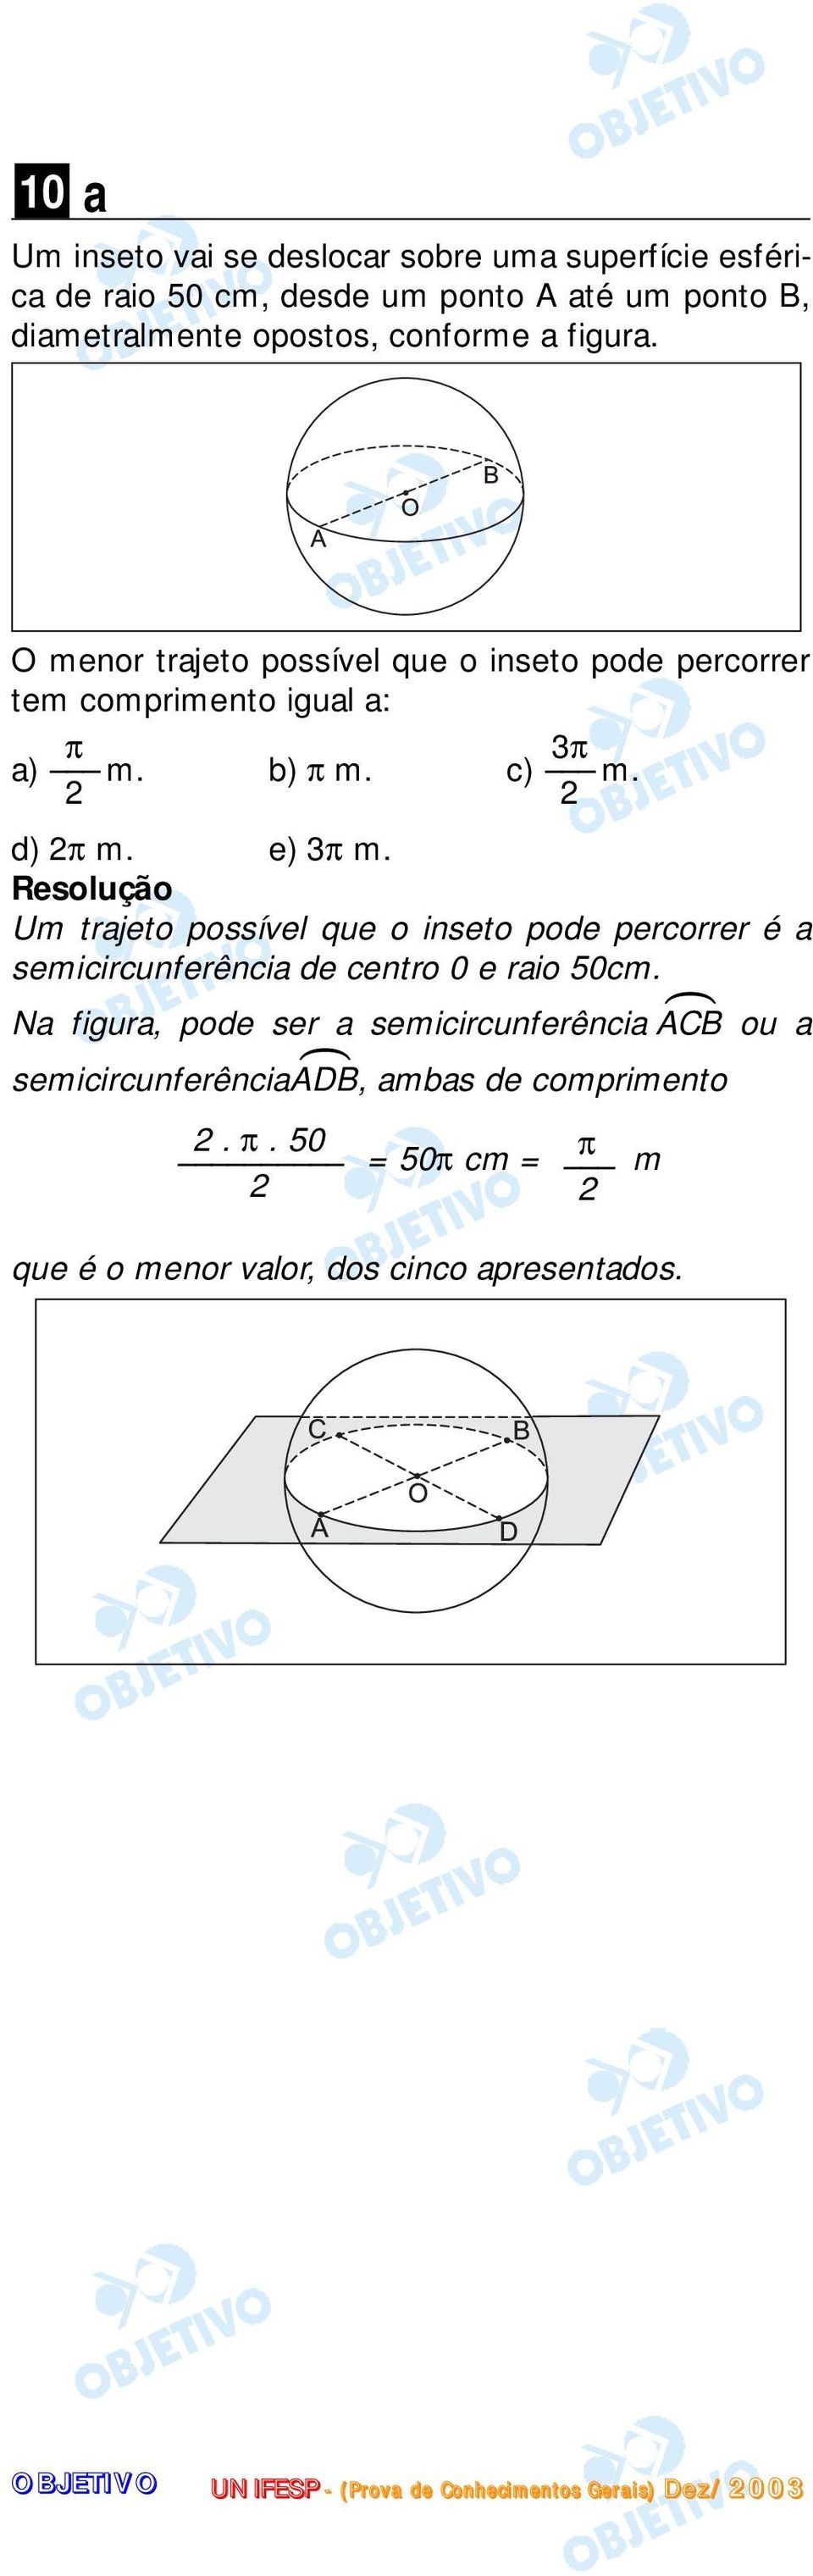 e) 3π m. Um trajeto possível que o inseto pode percorrer é a semicircunferência de centro 0 e raio 50cm.